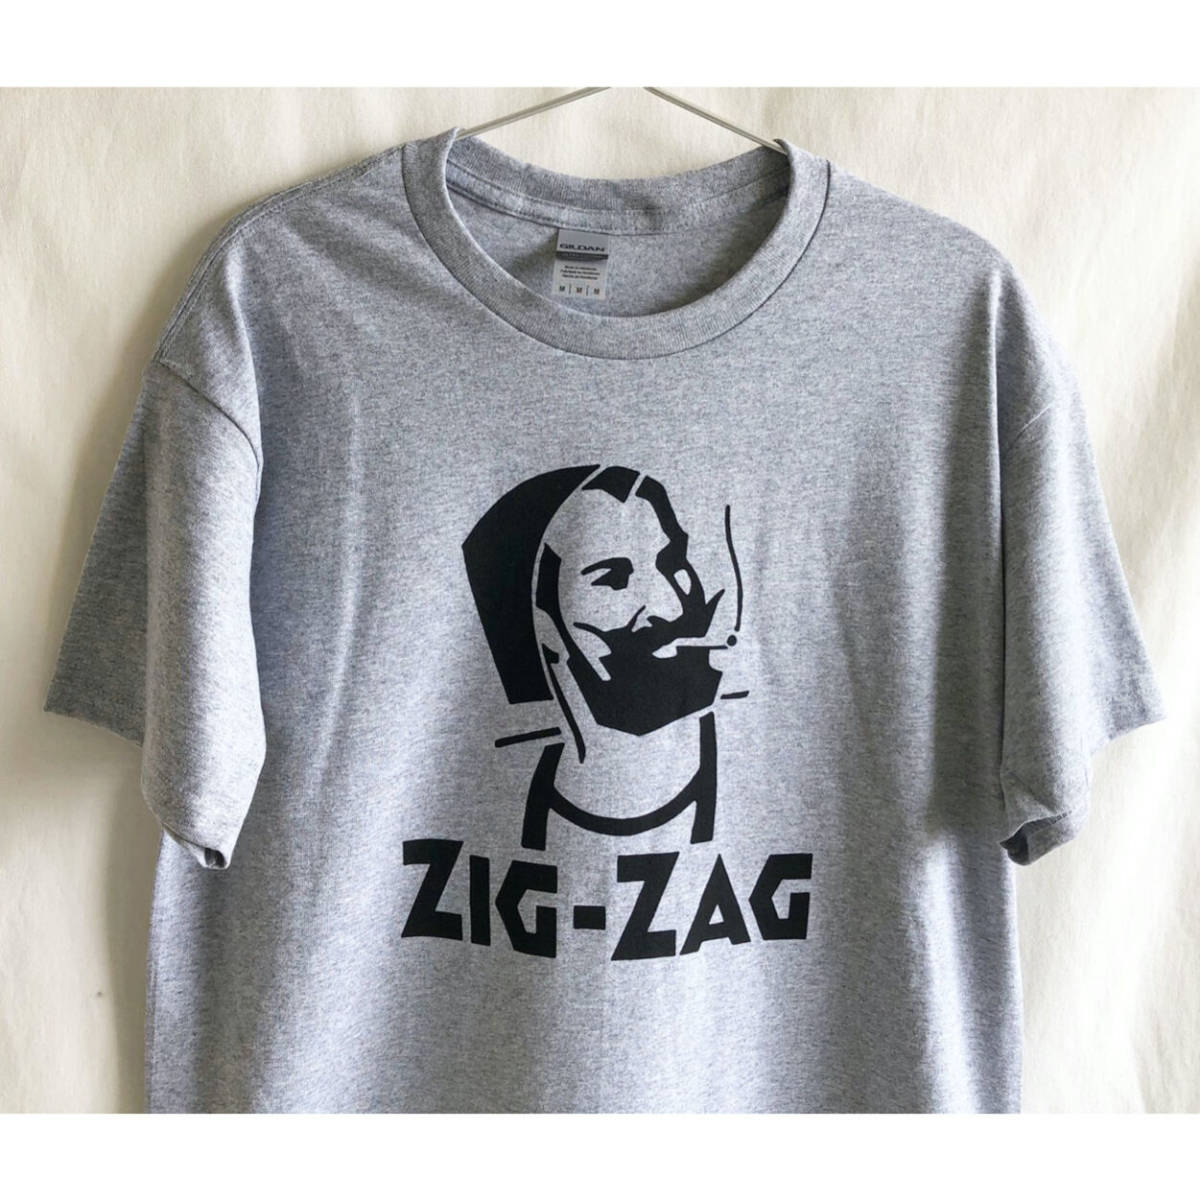  быстрое решение / повторное поступление [ за границей покупка есть / новый товар ]ZIG ZAG футболка / Heather серый /L размер / наматывать сигареты / joint /GILDAN/ZIG ZAG MAN/ очень редкий (luz.zz.t.g)